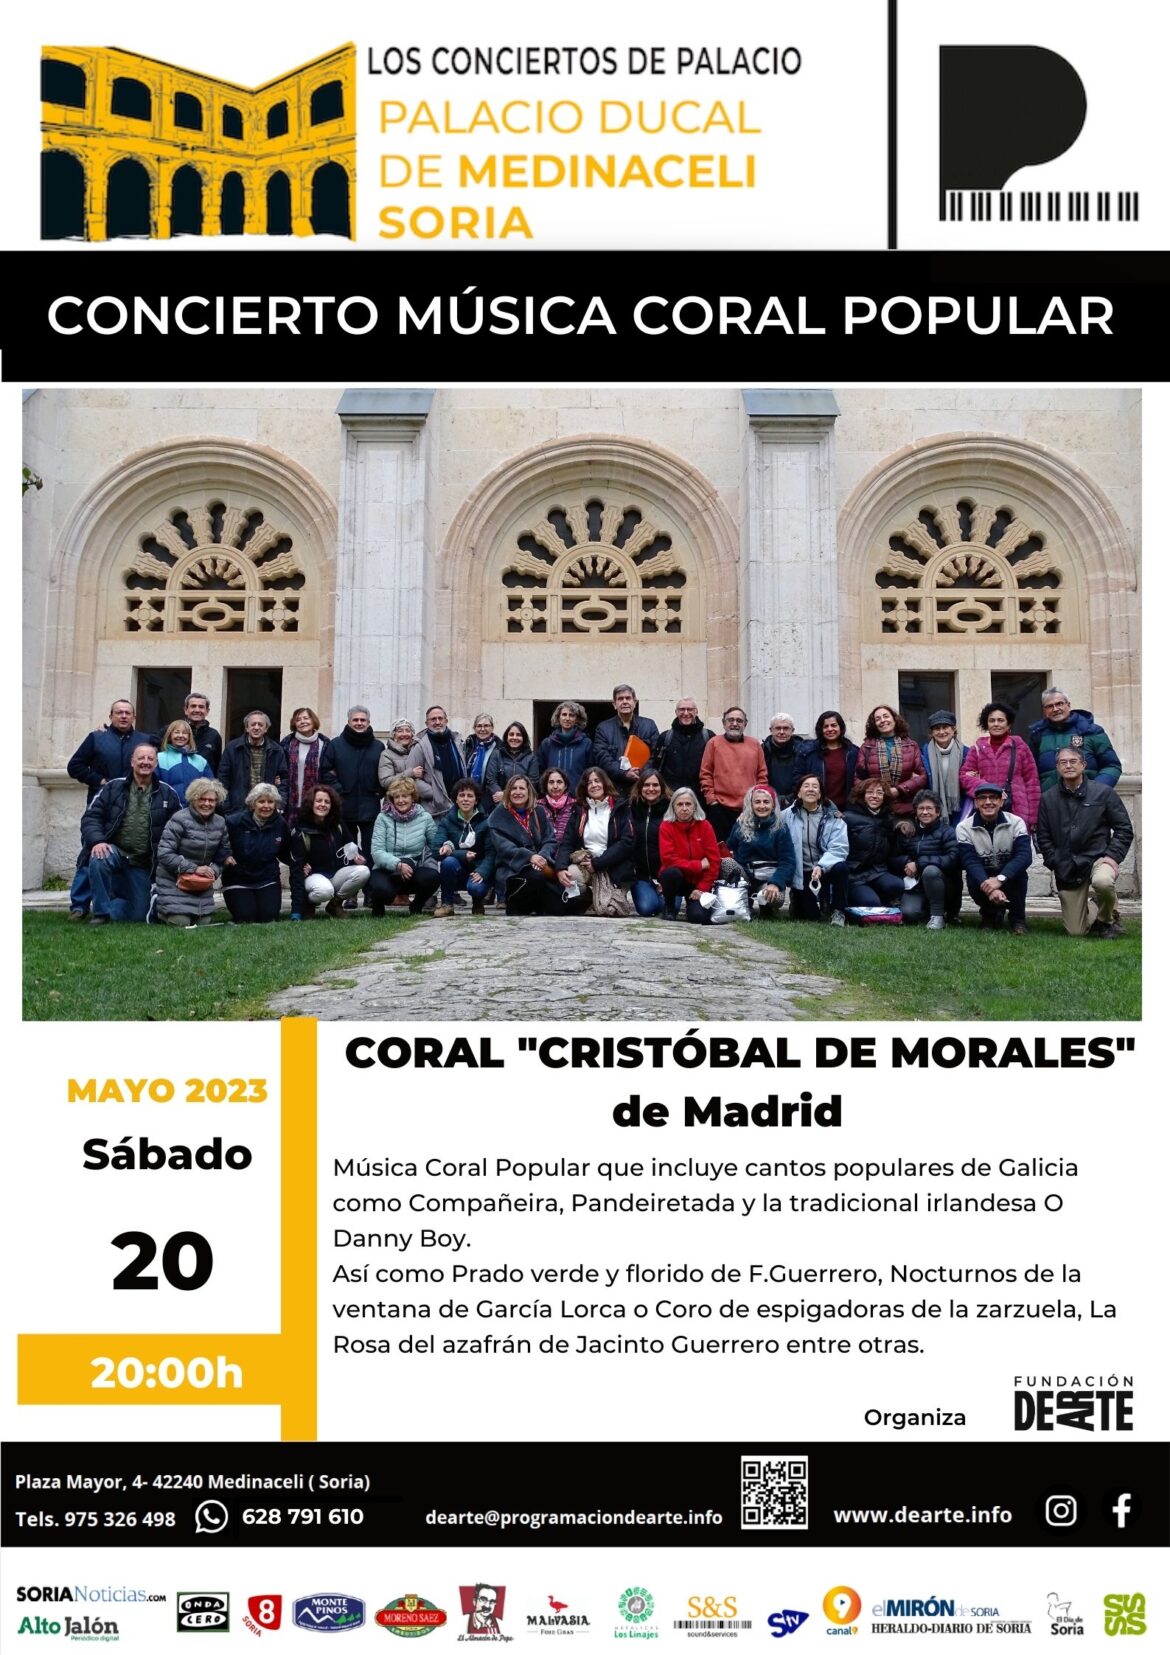 Concierto de Música Coral Popular “Cristóbal de Morales” de Madrid